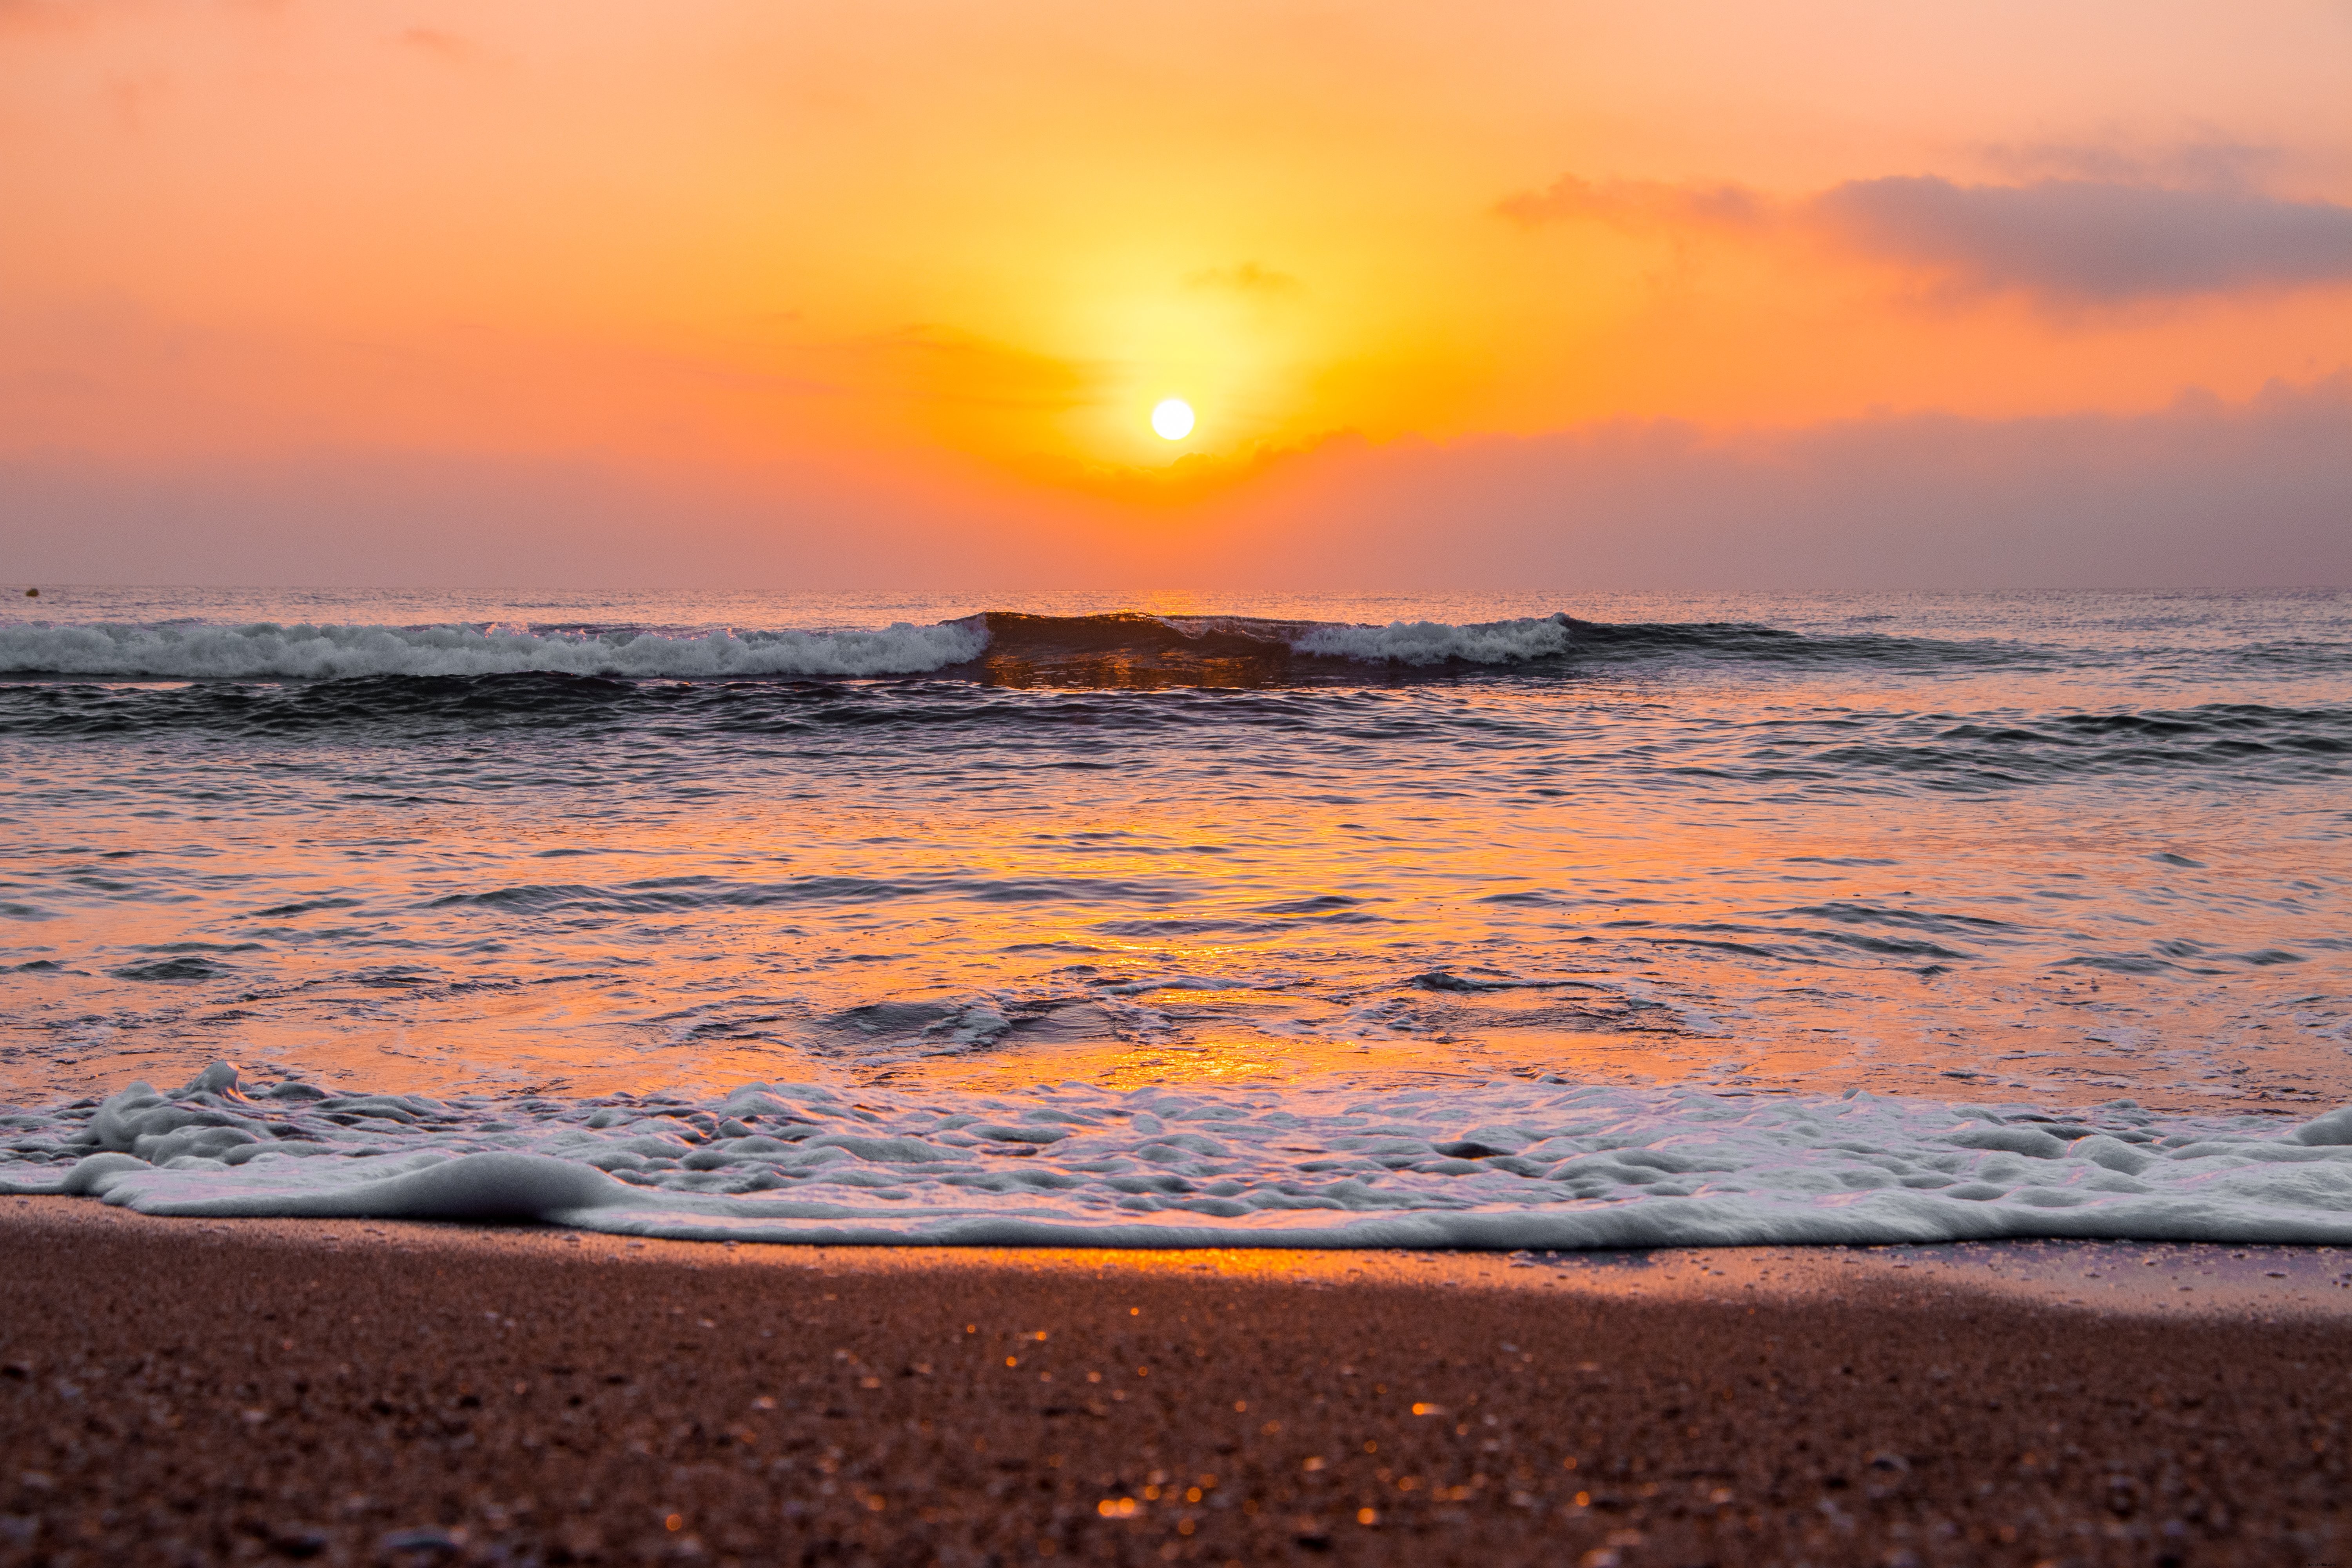 Foto do nascer do sol sobre o oceano ondulado na praia de areia